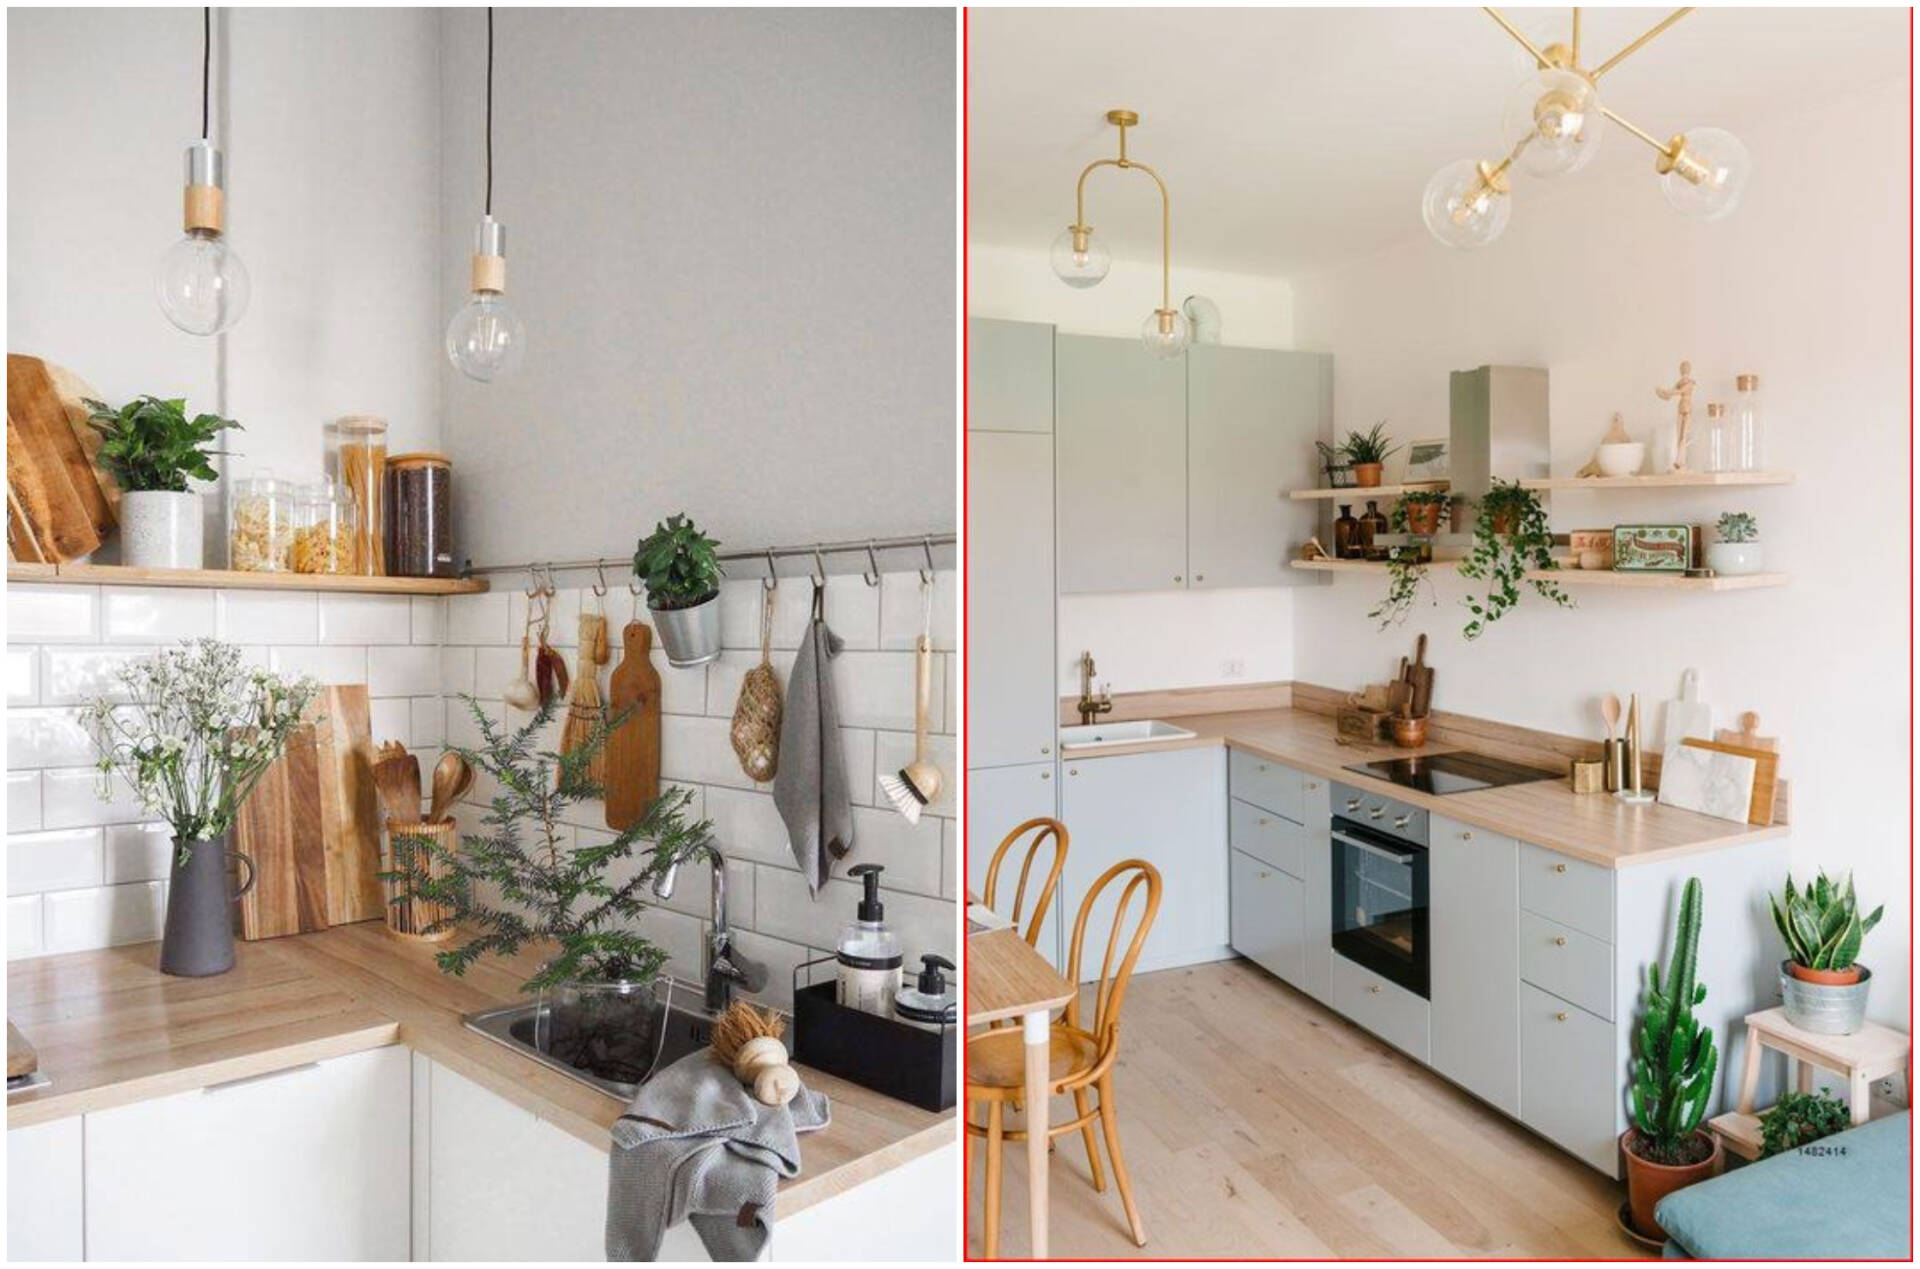 Với thiết kế nhà bếp nhỏ, bạn sẽ không phải lo lắng về diện tích của căn phòng. Với sự sáng tạo và kinh nghiệm của những chuyên gia thiết kế, mọi không gian có thể được tận dụng triệt để để tạo ra một căn nhà bếp xinh xắn và tiện nghi.